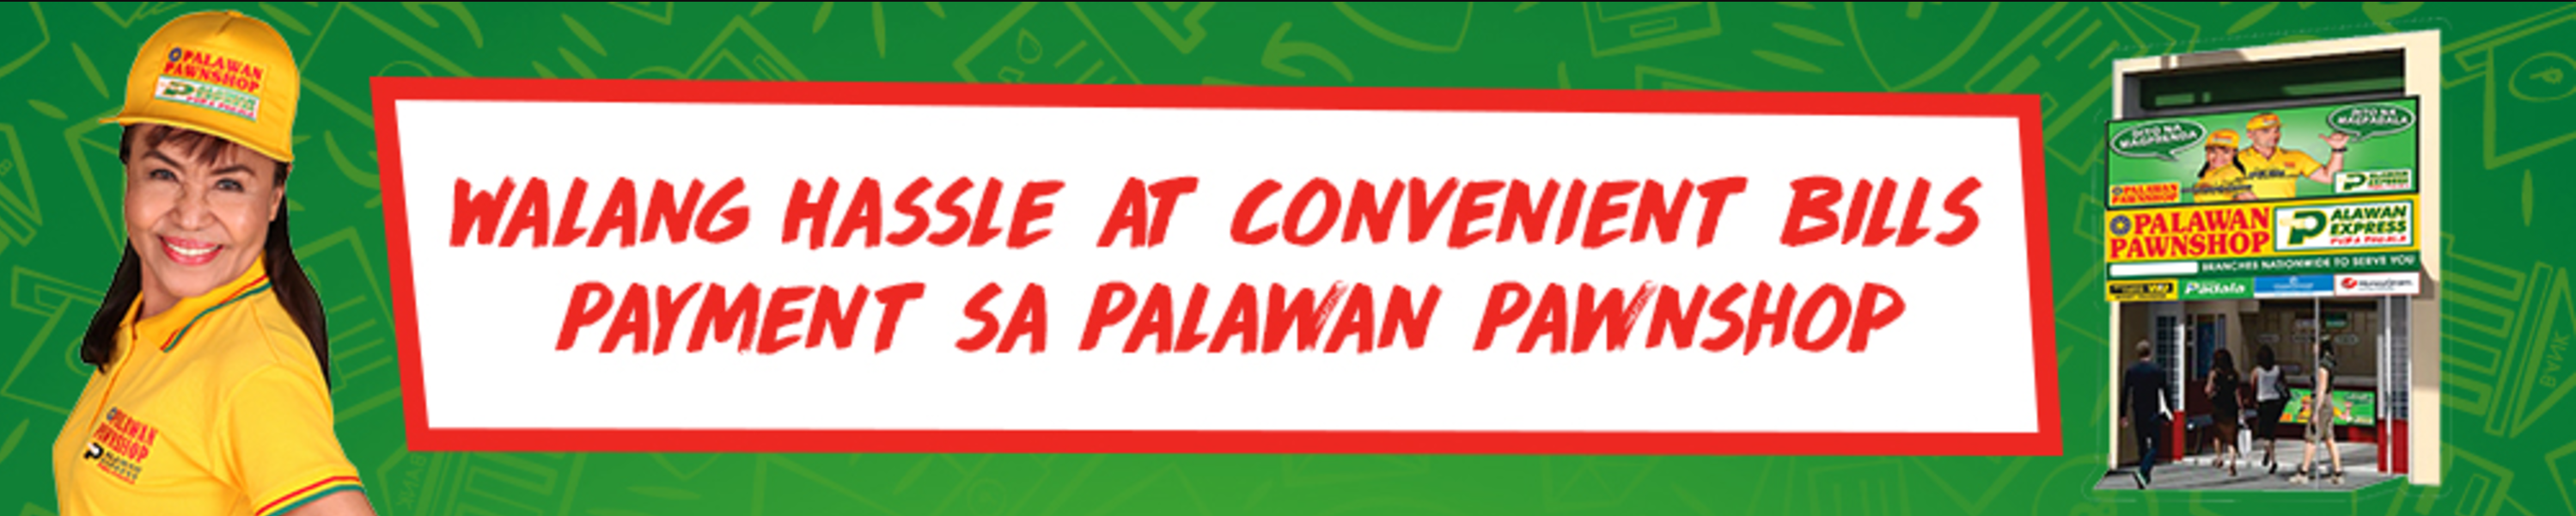 Walang hassle at convenient bills payment sa Palawan Pawnshop